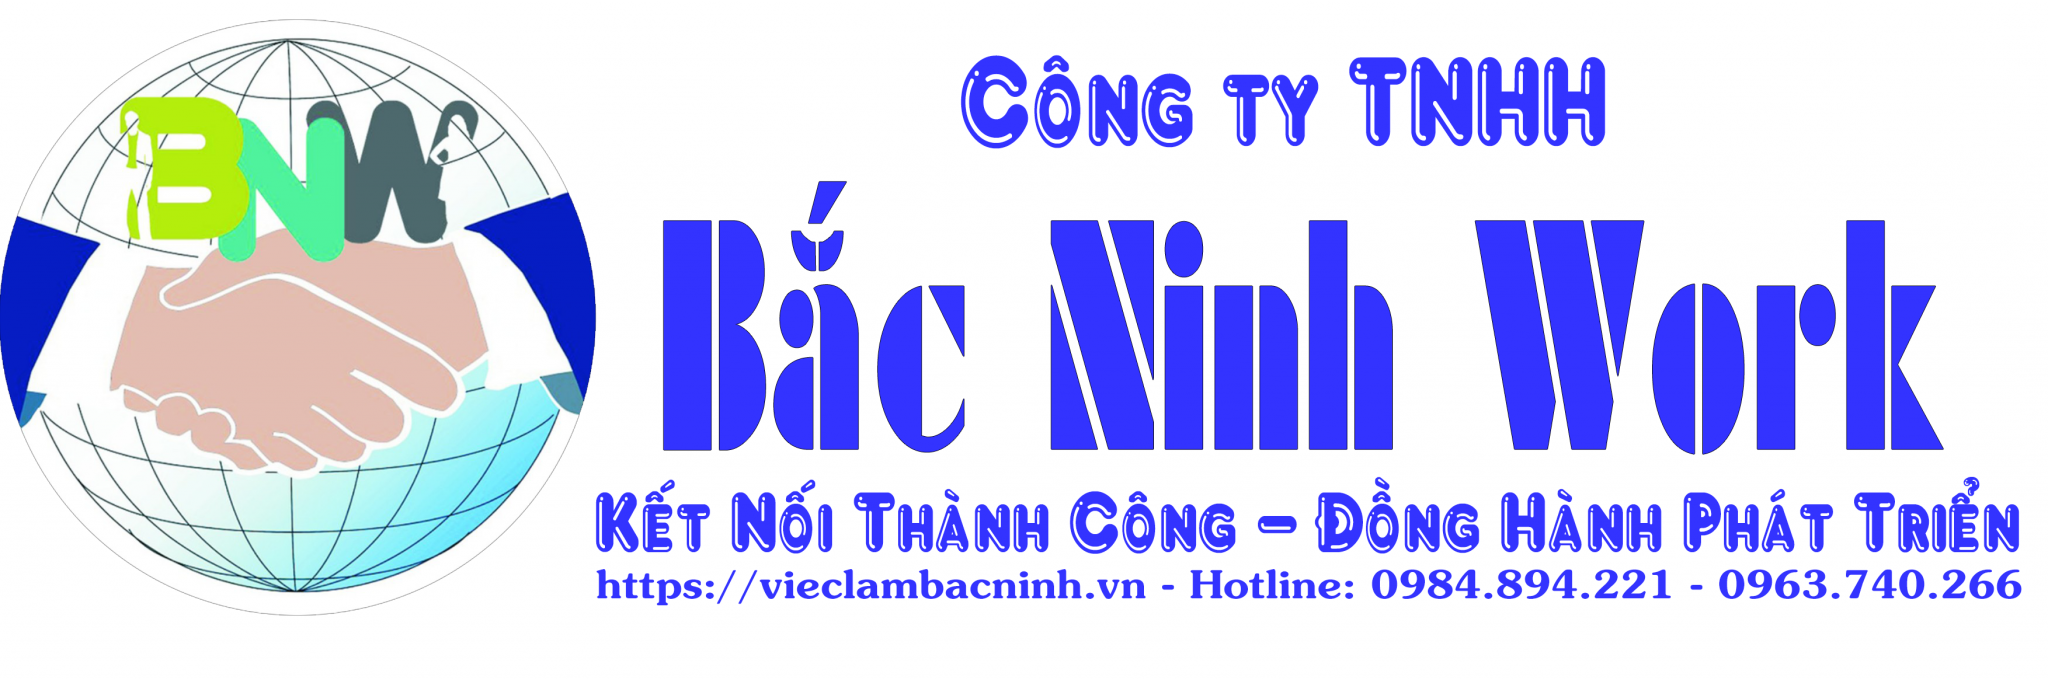 Bắc Ninh Work - Tuyển dụng  việc làm  Bắc Ninh - Cơ hội cho hàng nghìn lao động.